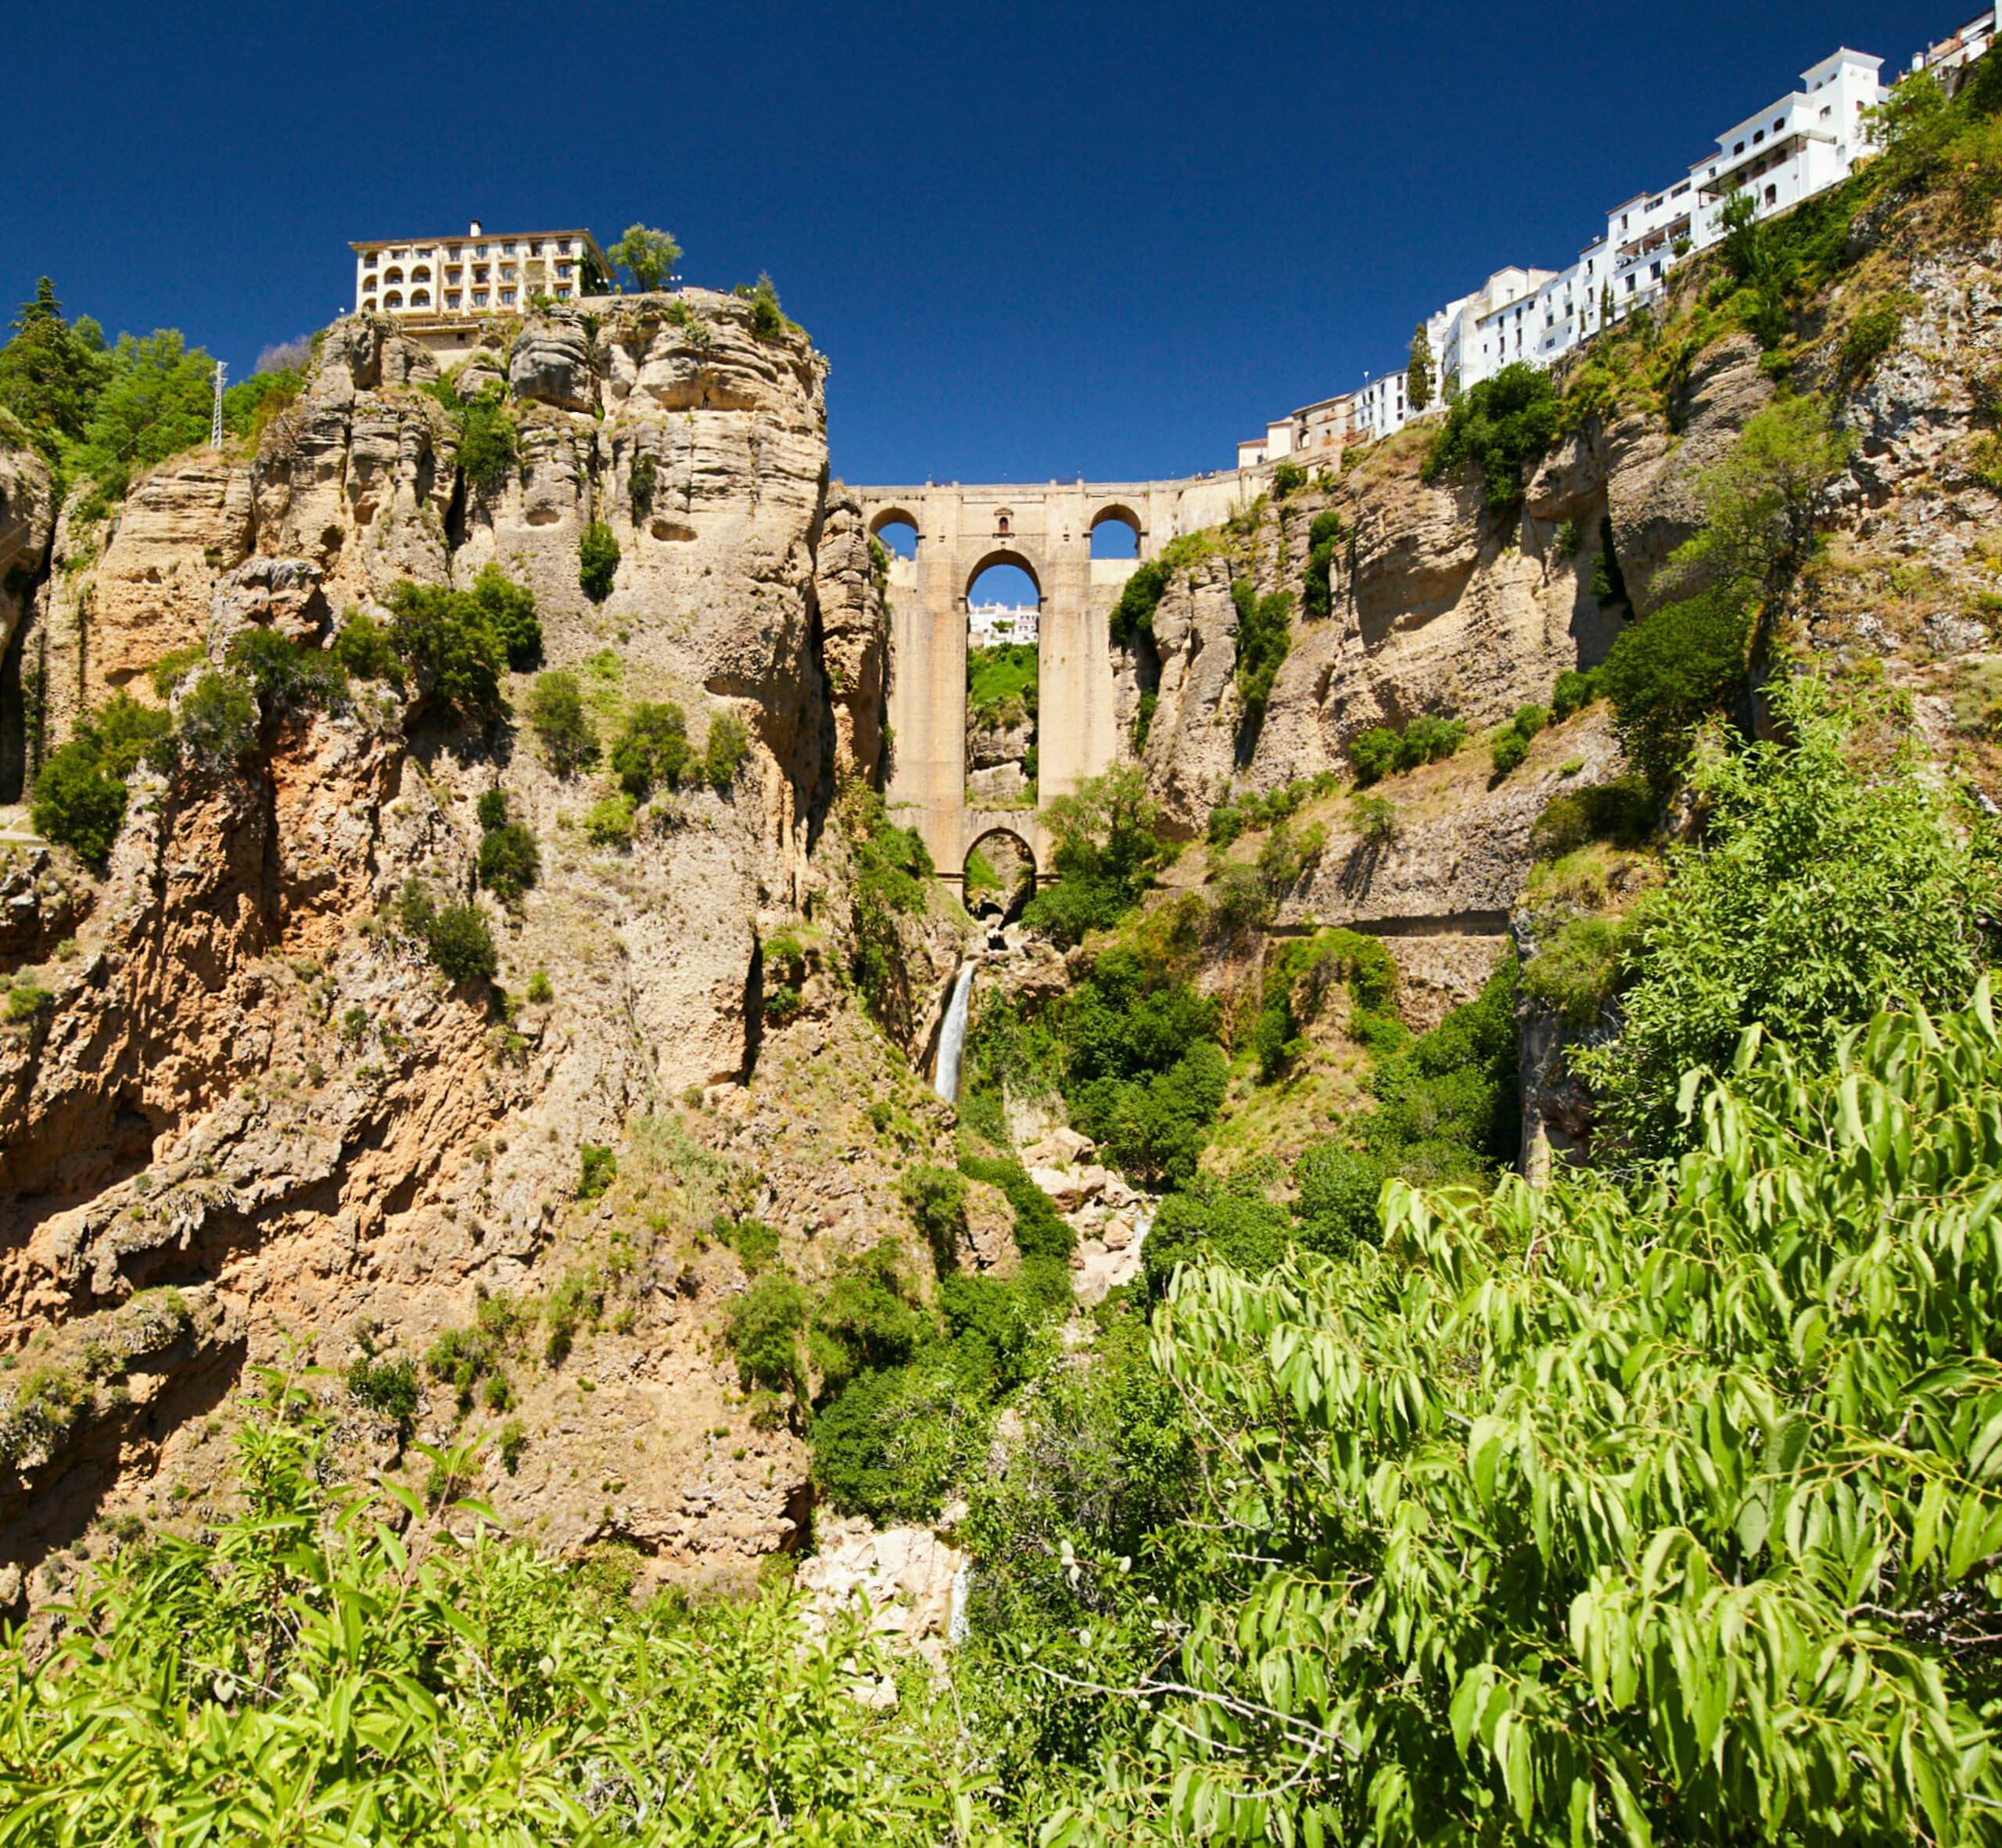 Gorge of Ronda and Puente Nuevo